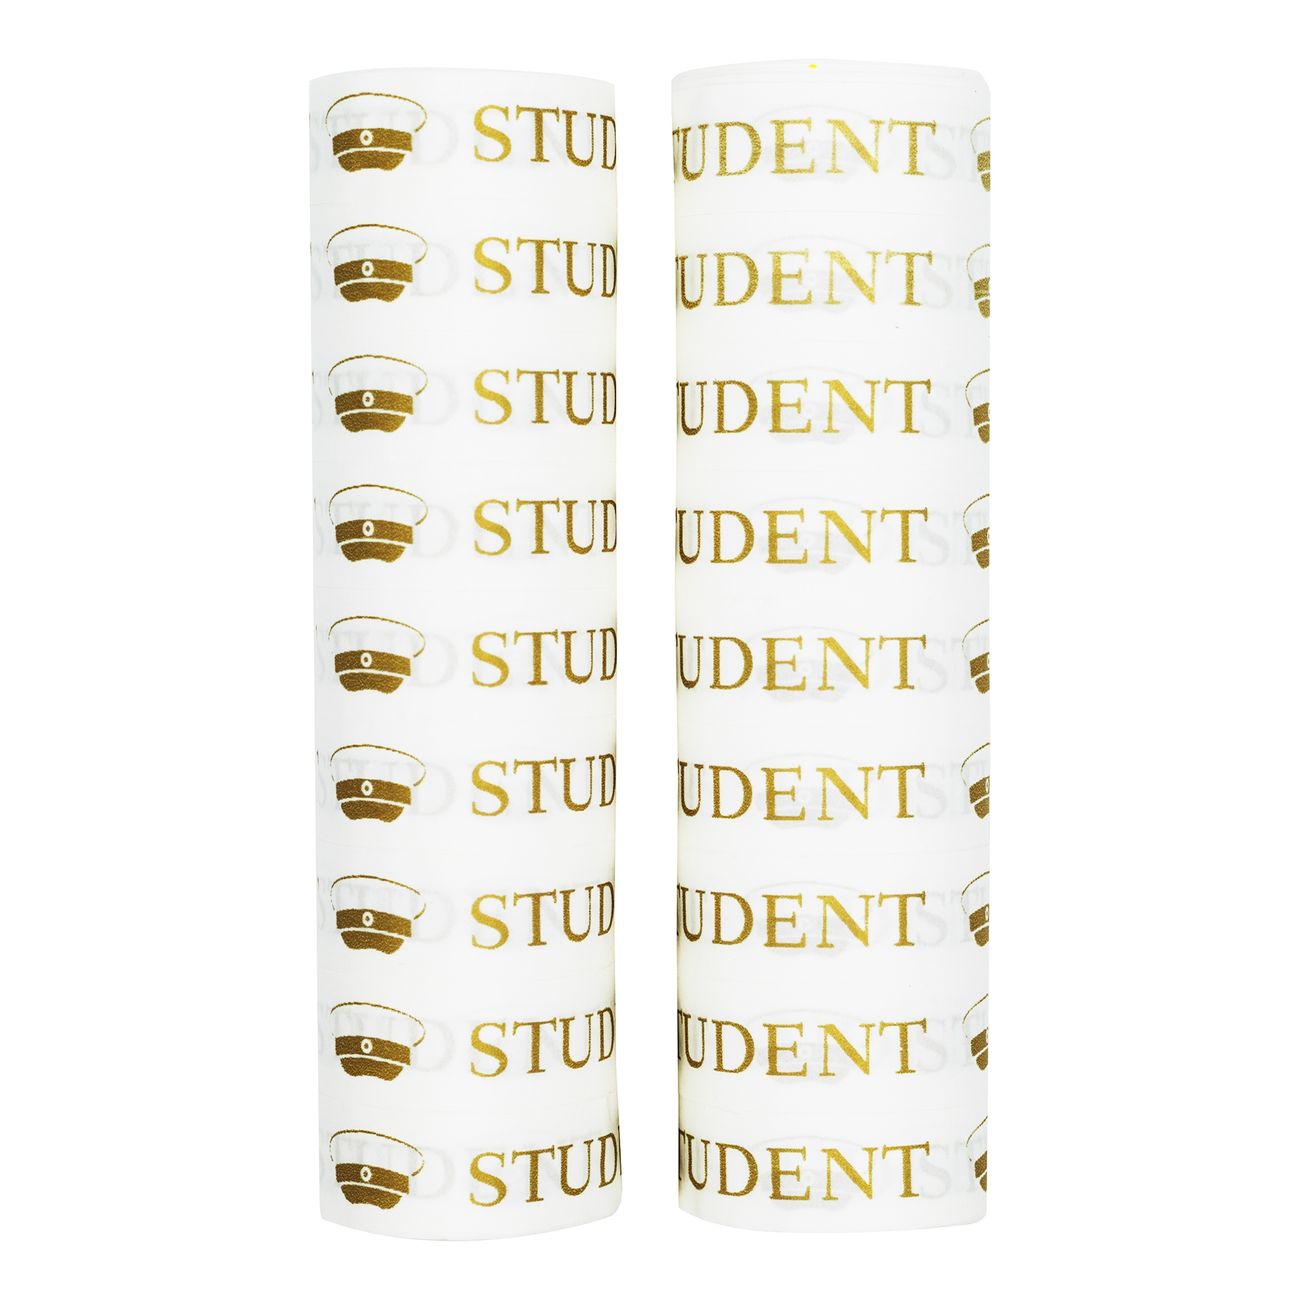 serpentiner-student-71372-3